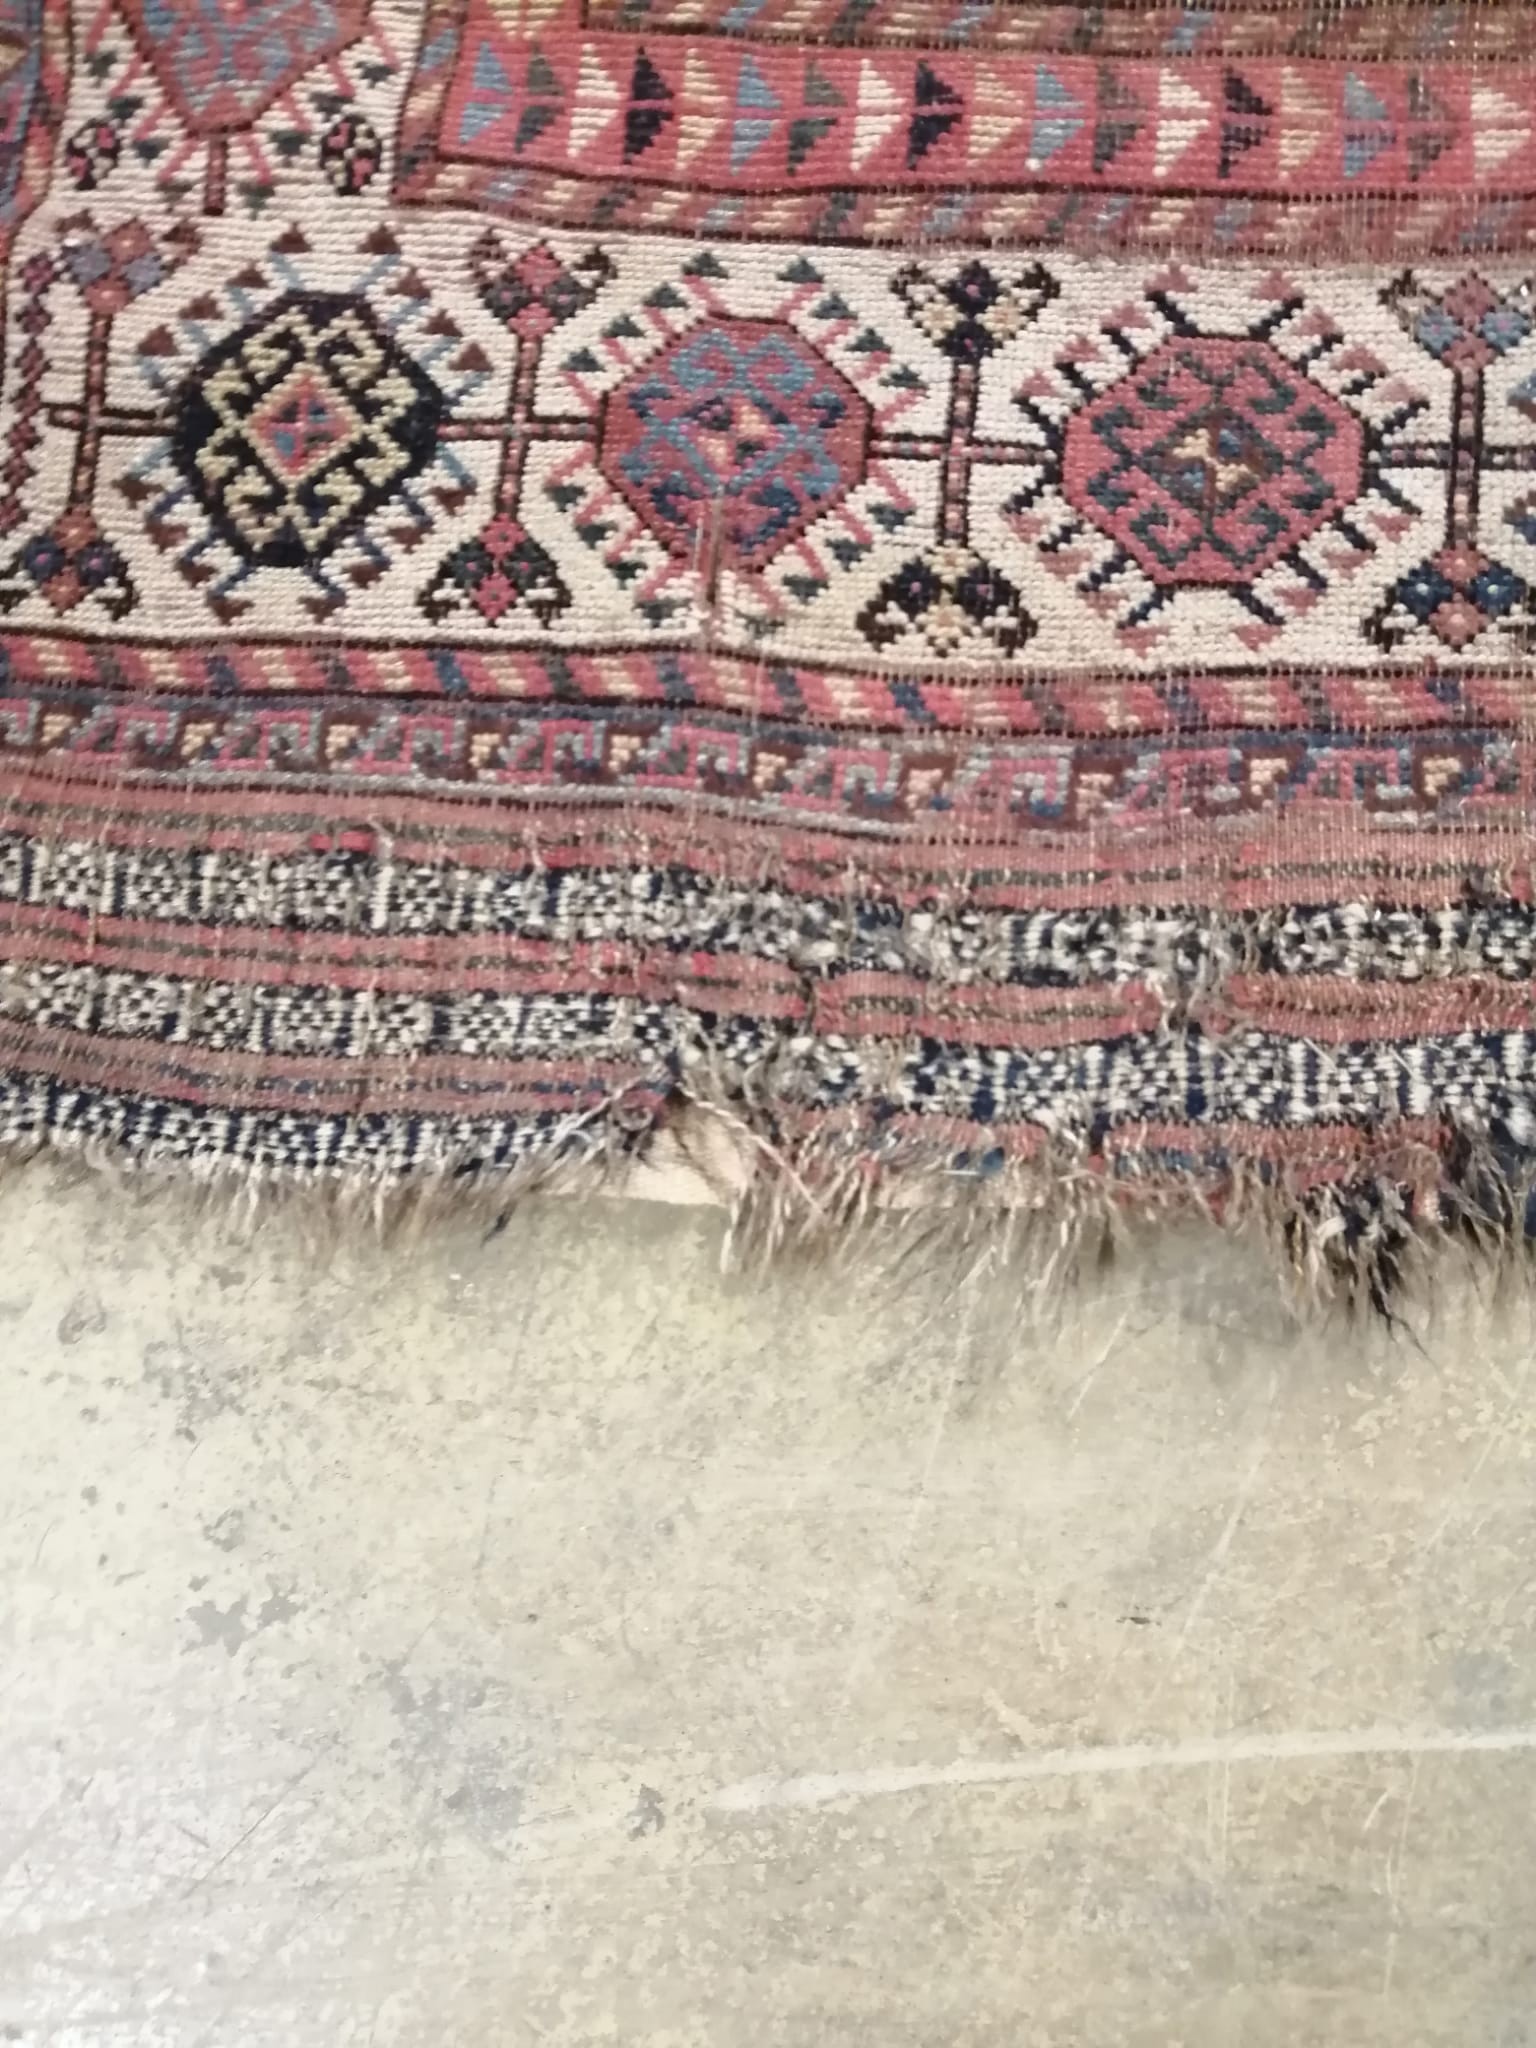 An antique Khamseh rug, 290 x 136cm